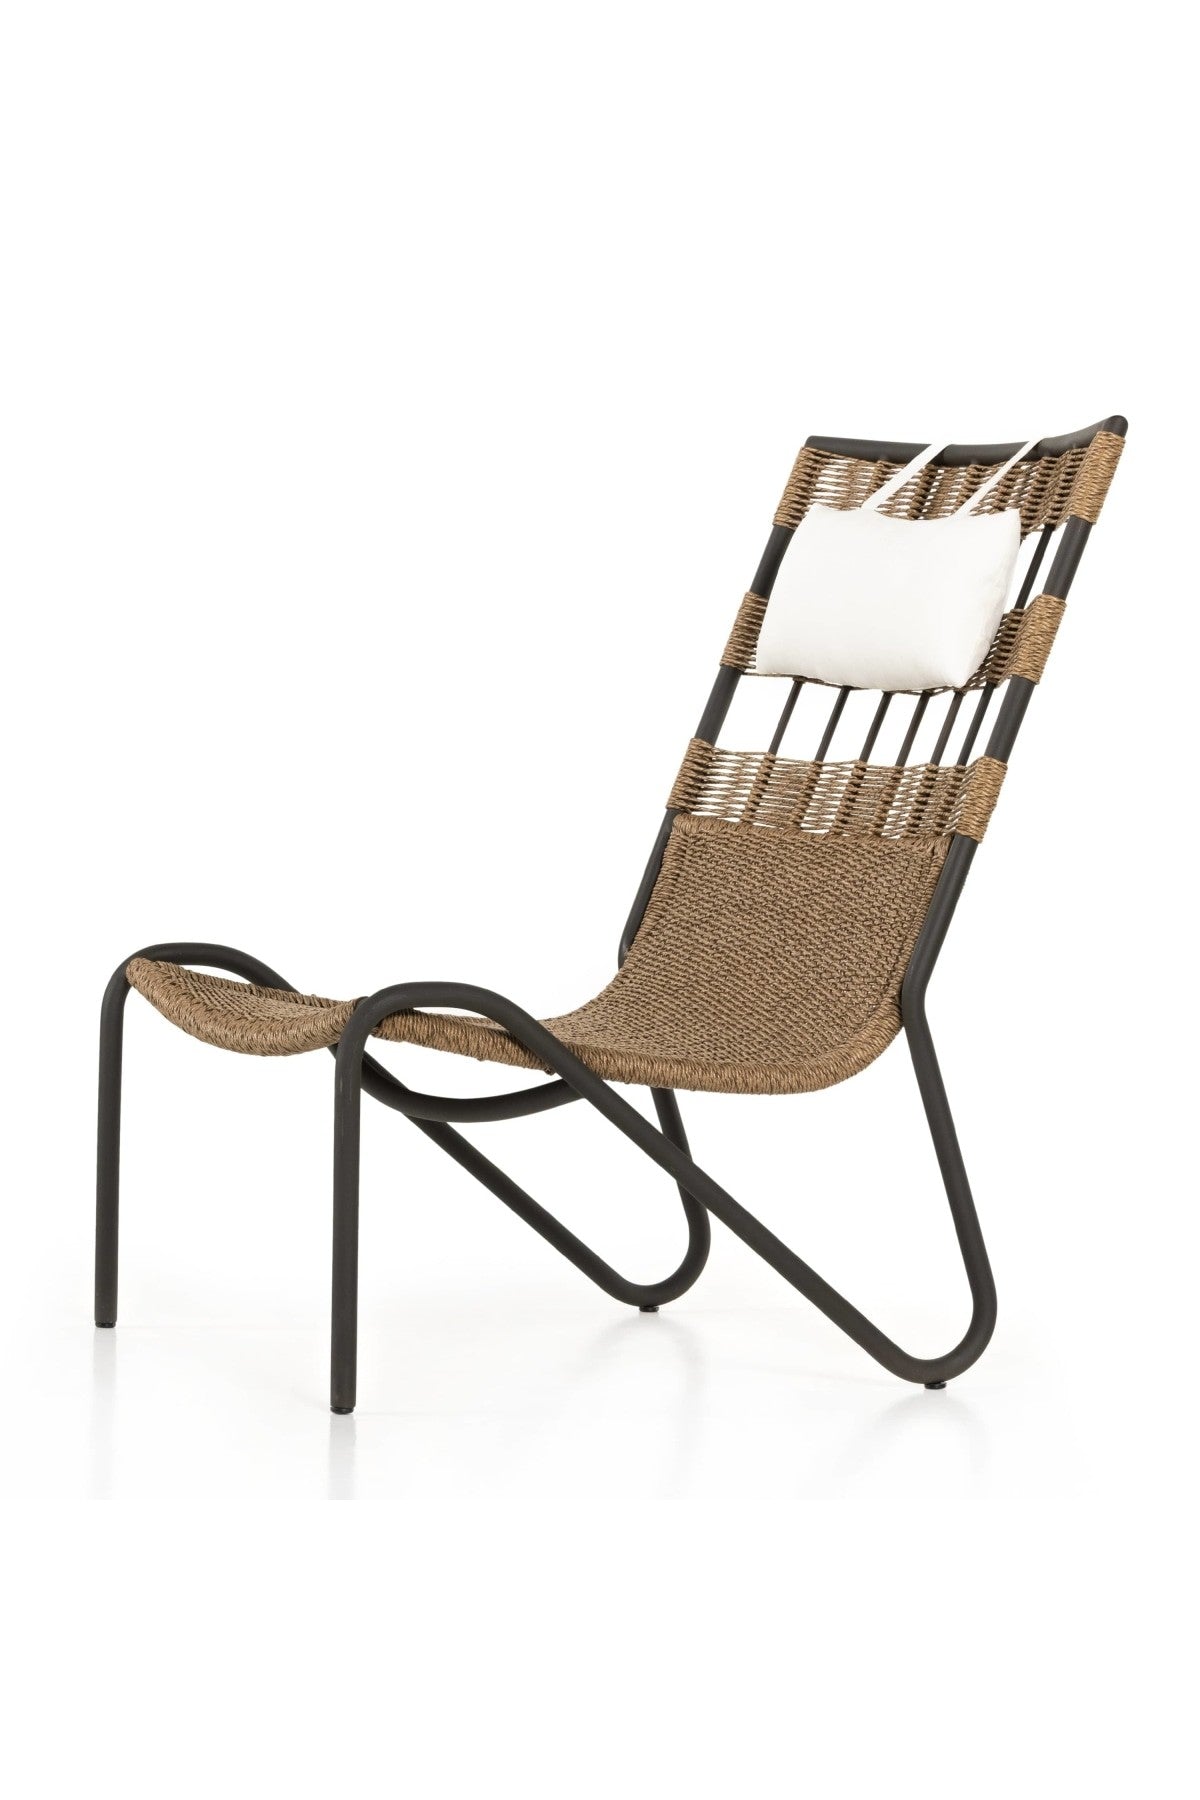 Avon Outdoor Chair